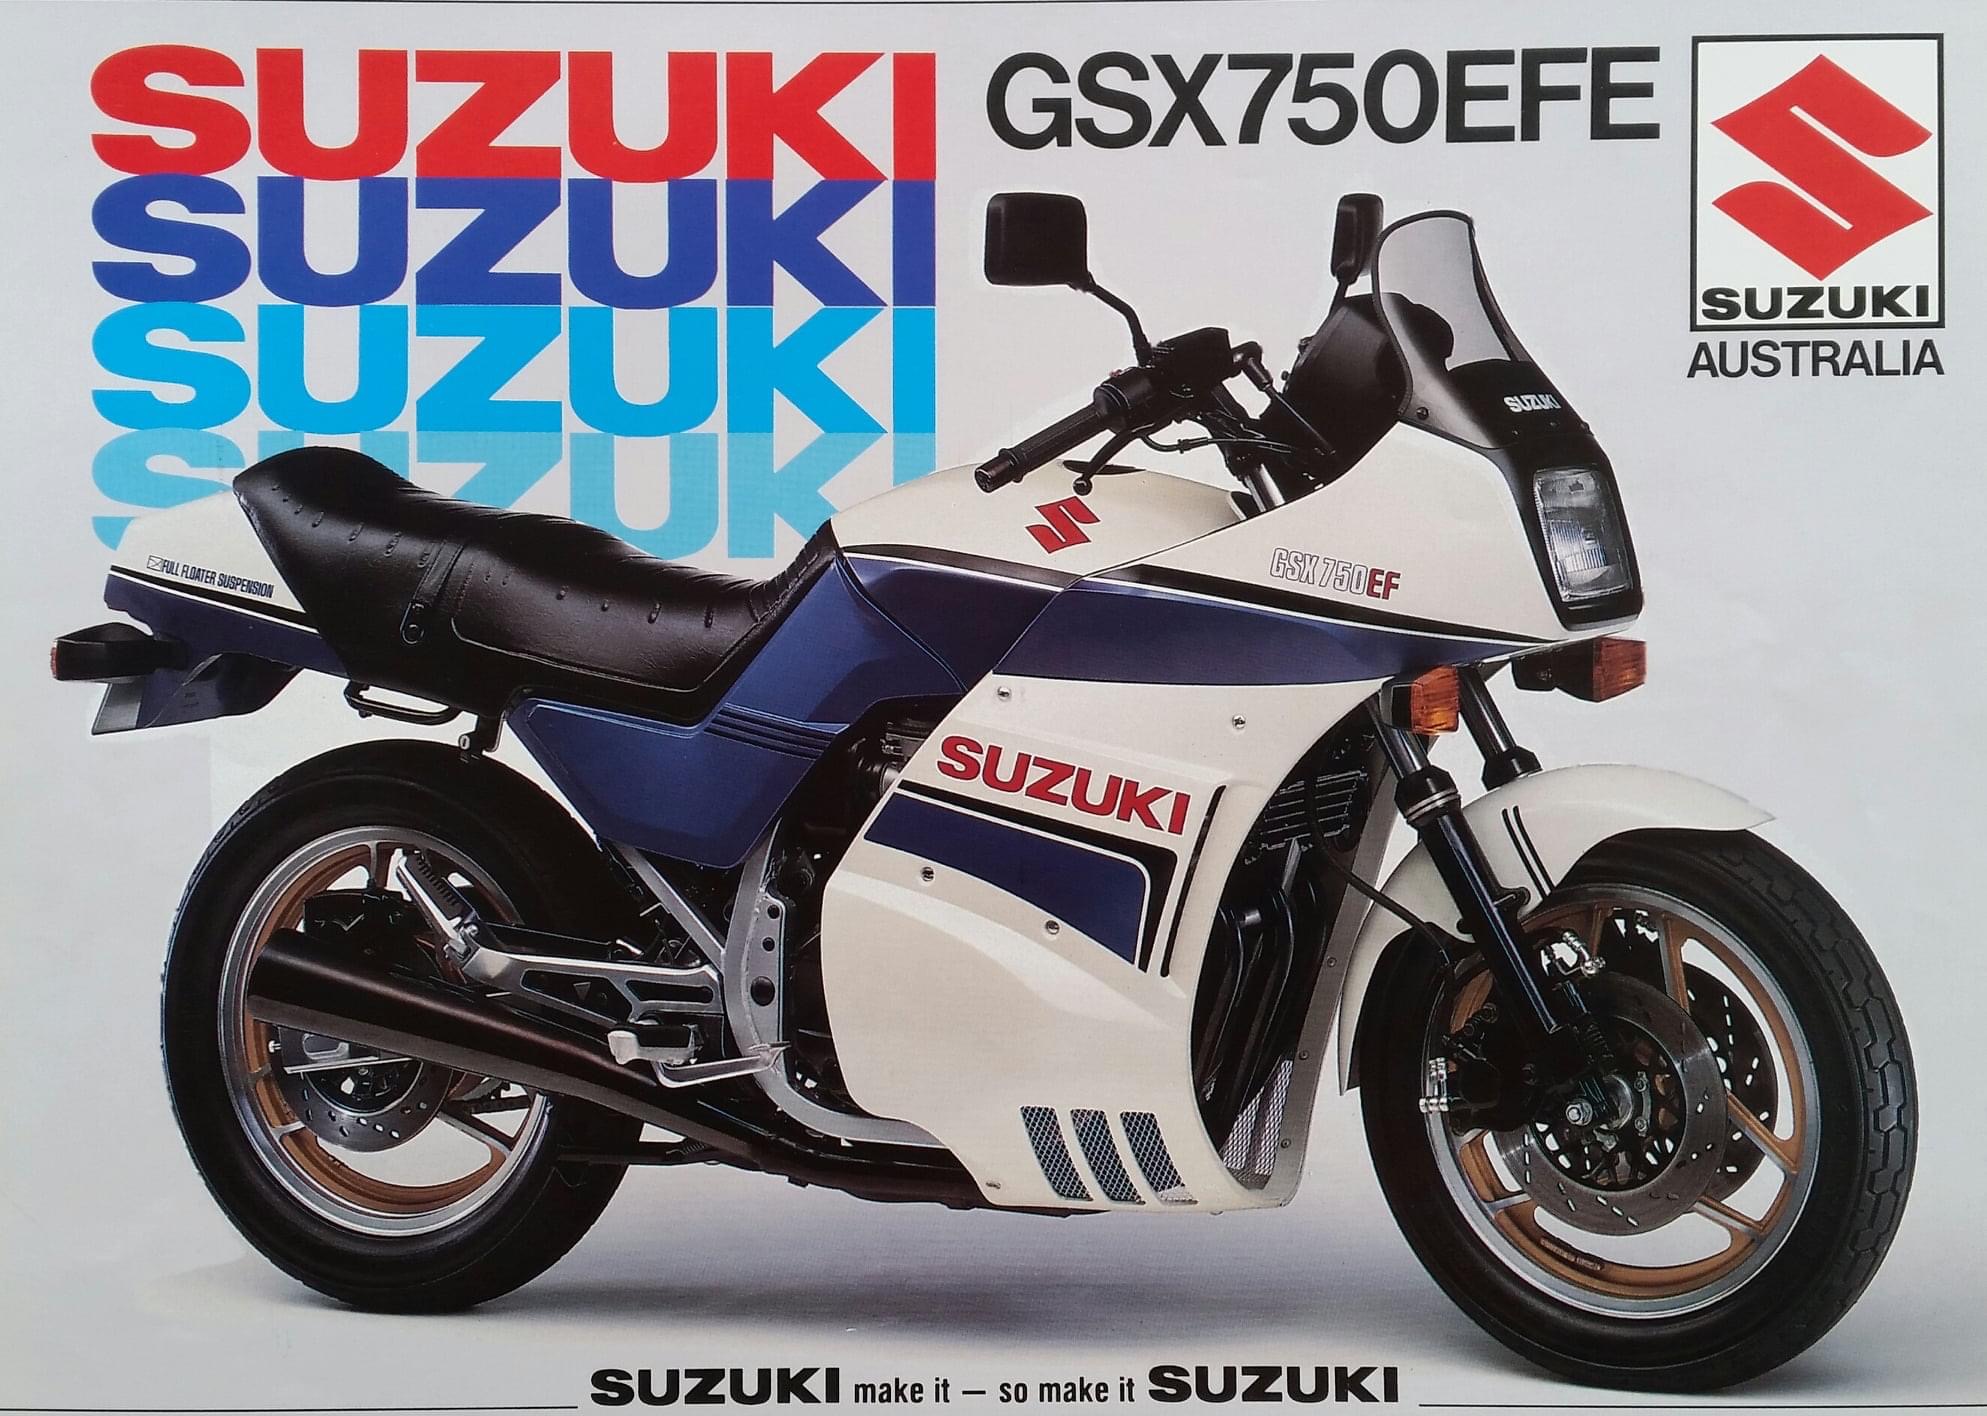 Suzuki GSX750EFE